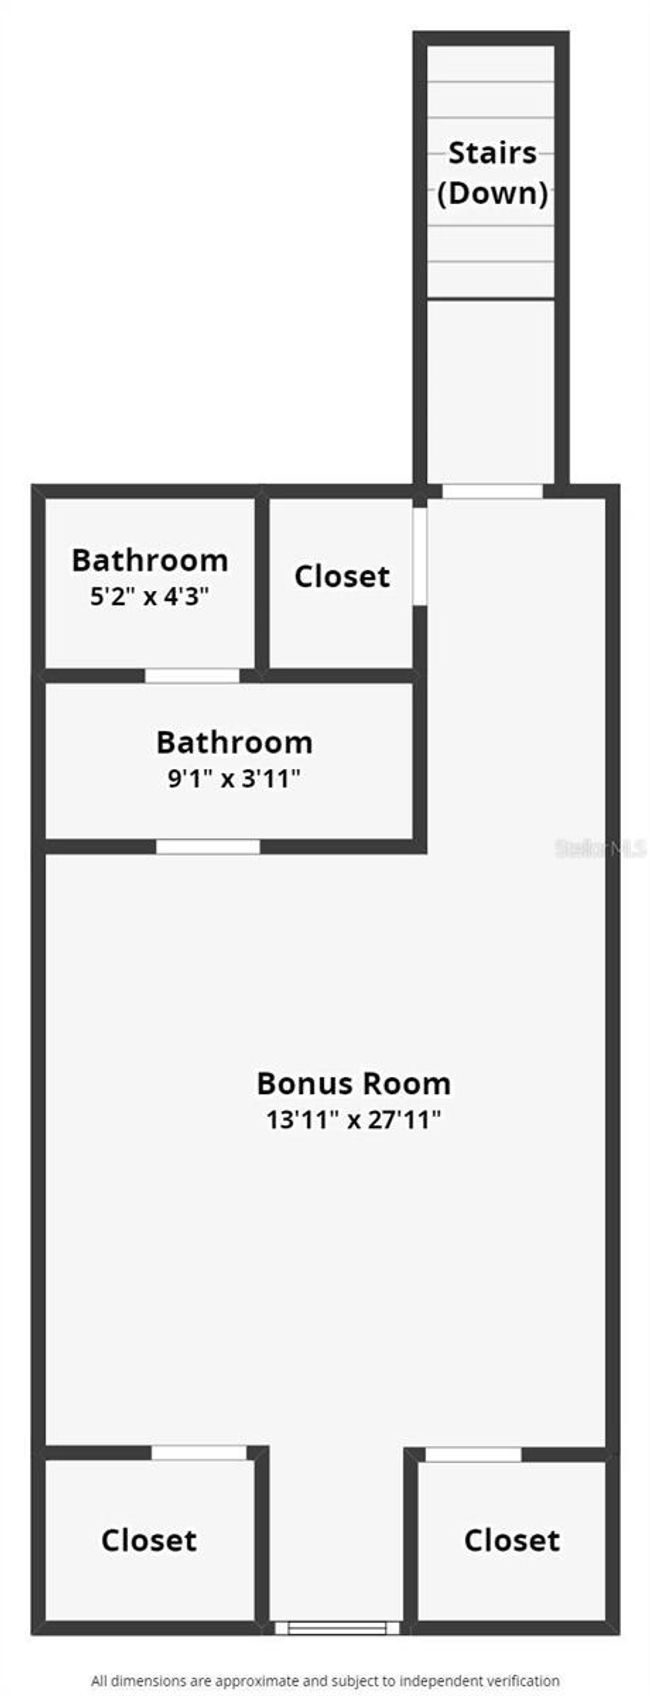 Floor Plan 2nd Floor | Image 7